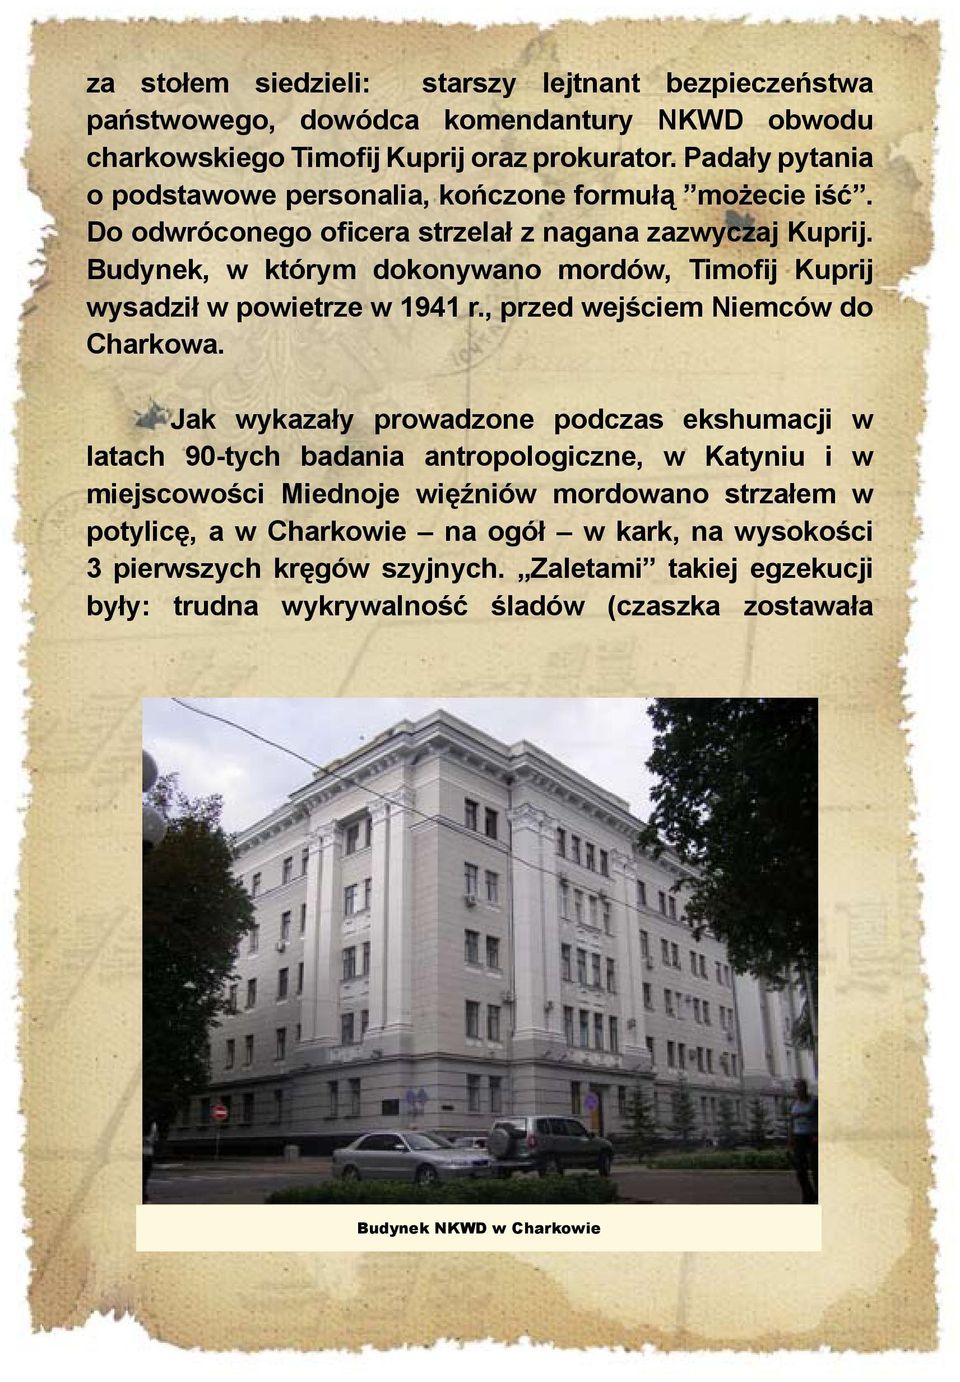 Budynek, w którym dokonywano mordów, Timofij Kuprij wysadził w powietrze w 1941 r., przed wejściem Niemców do Charkowa.